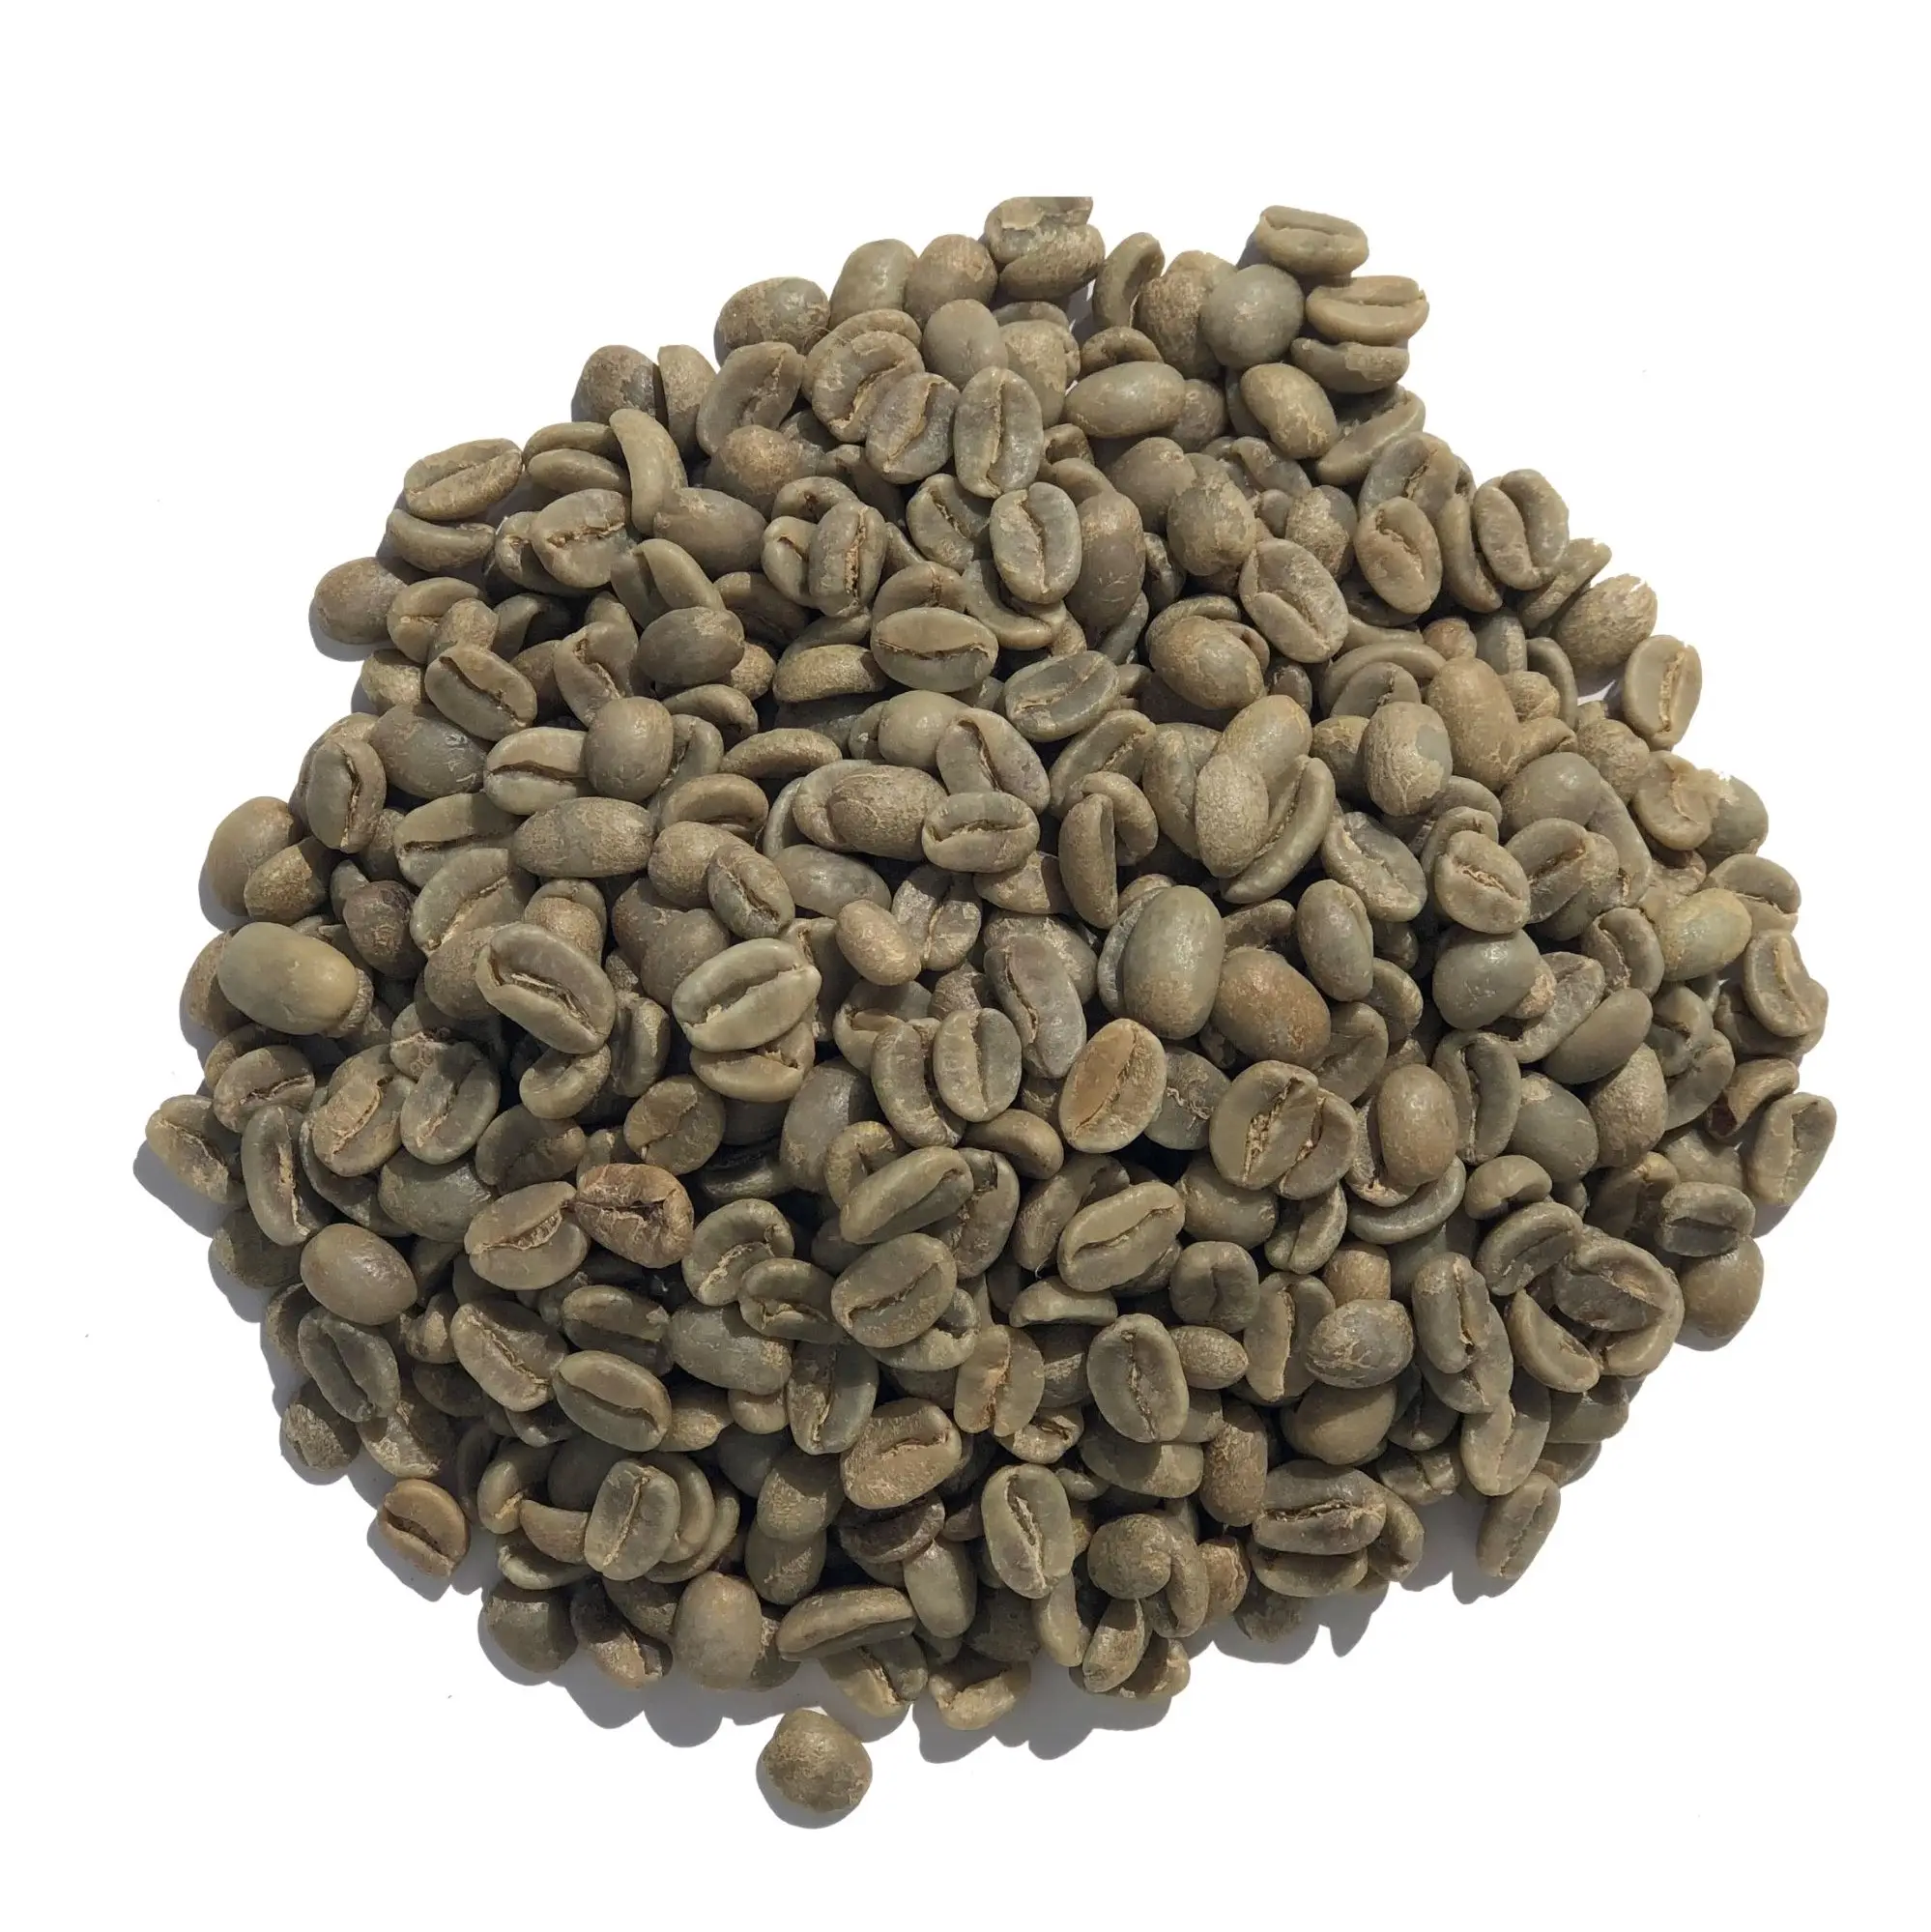 ベトナムコーヒー豆OEM安い価格コーヒー輸出業者アラビカロブスタブレンド生コーヒー豆を出荷する準備ができて